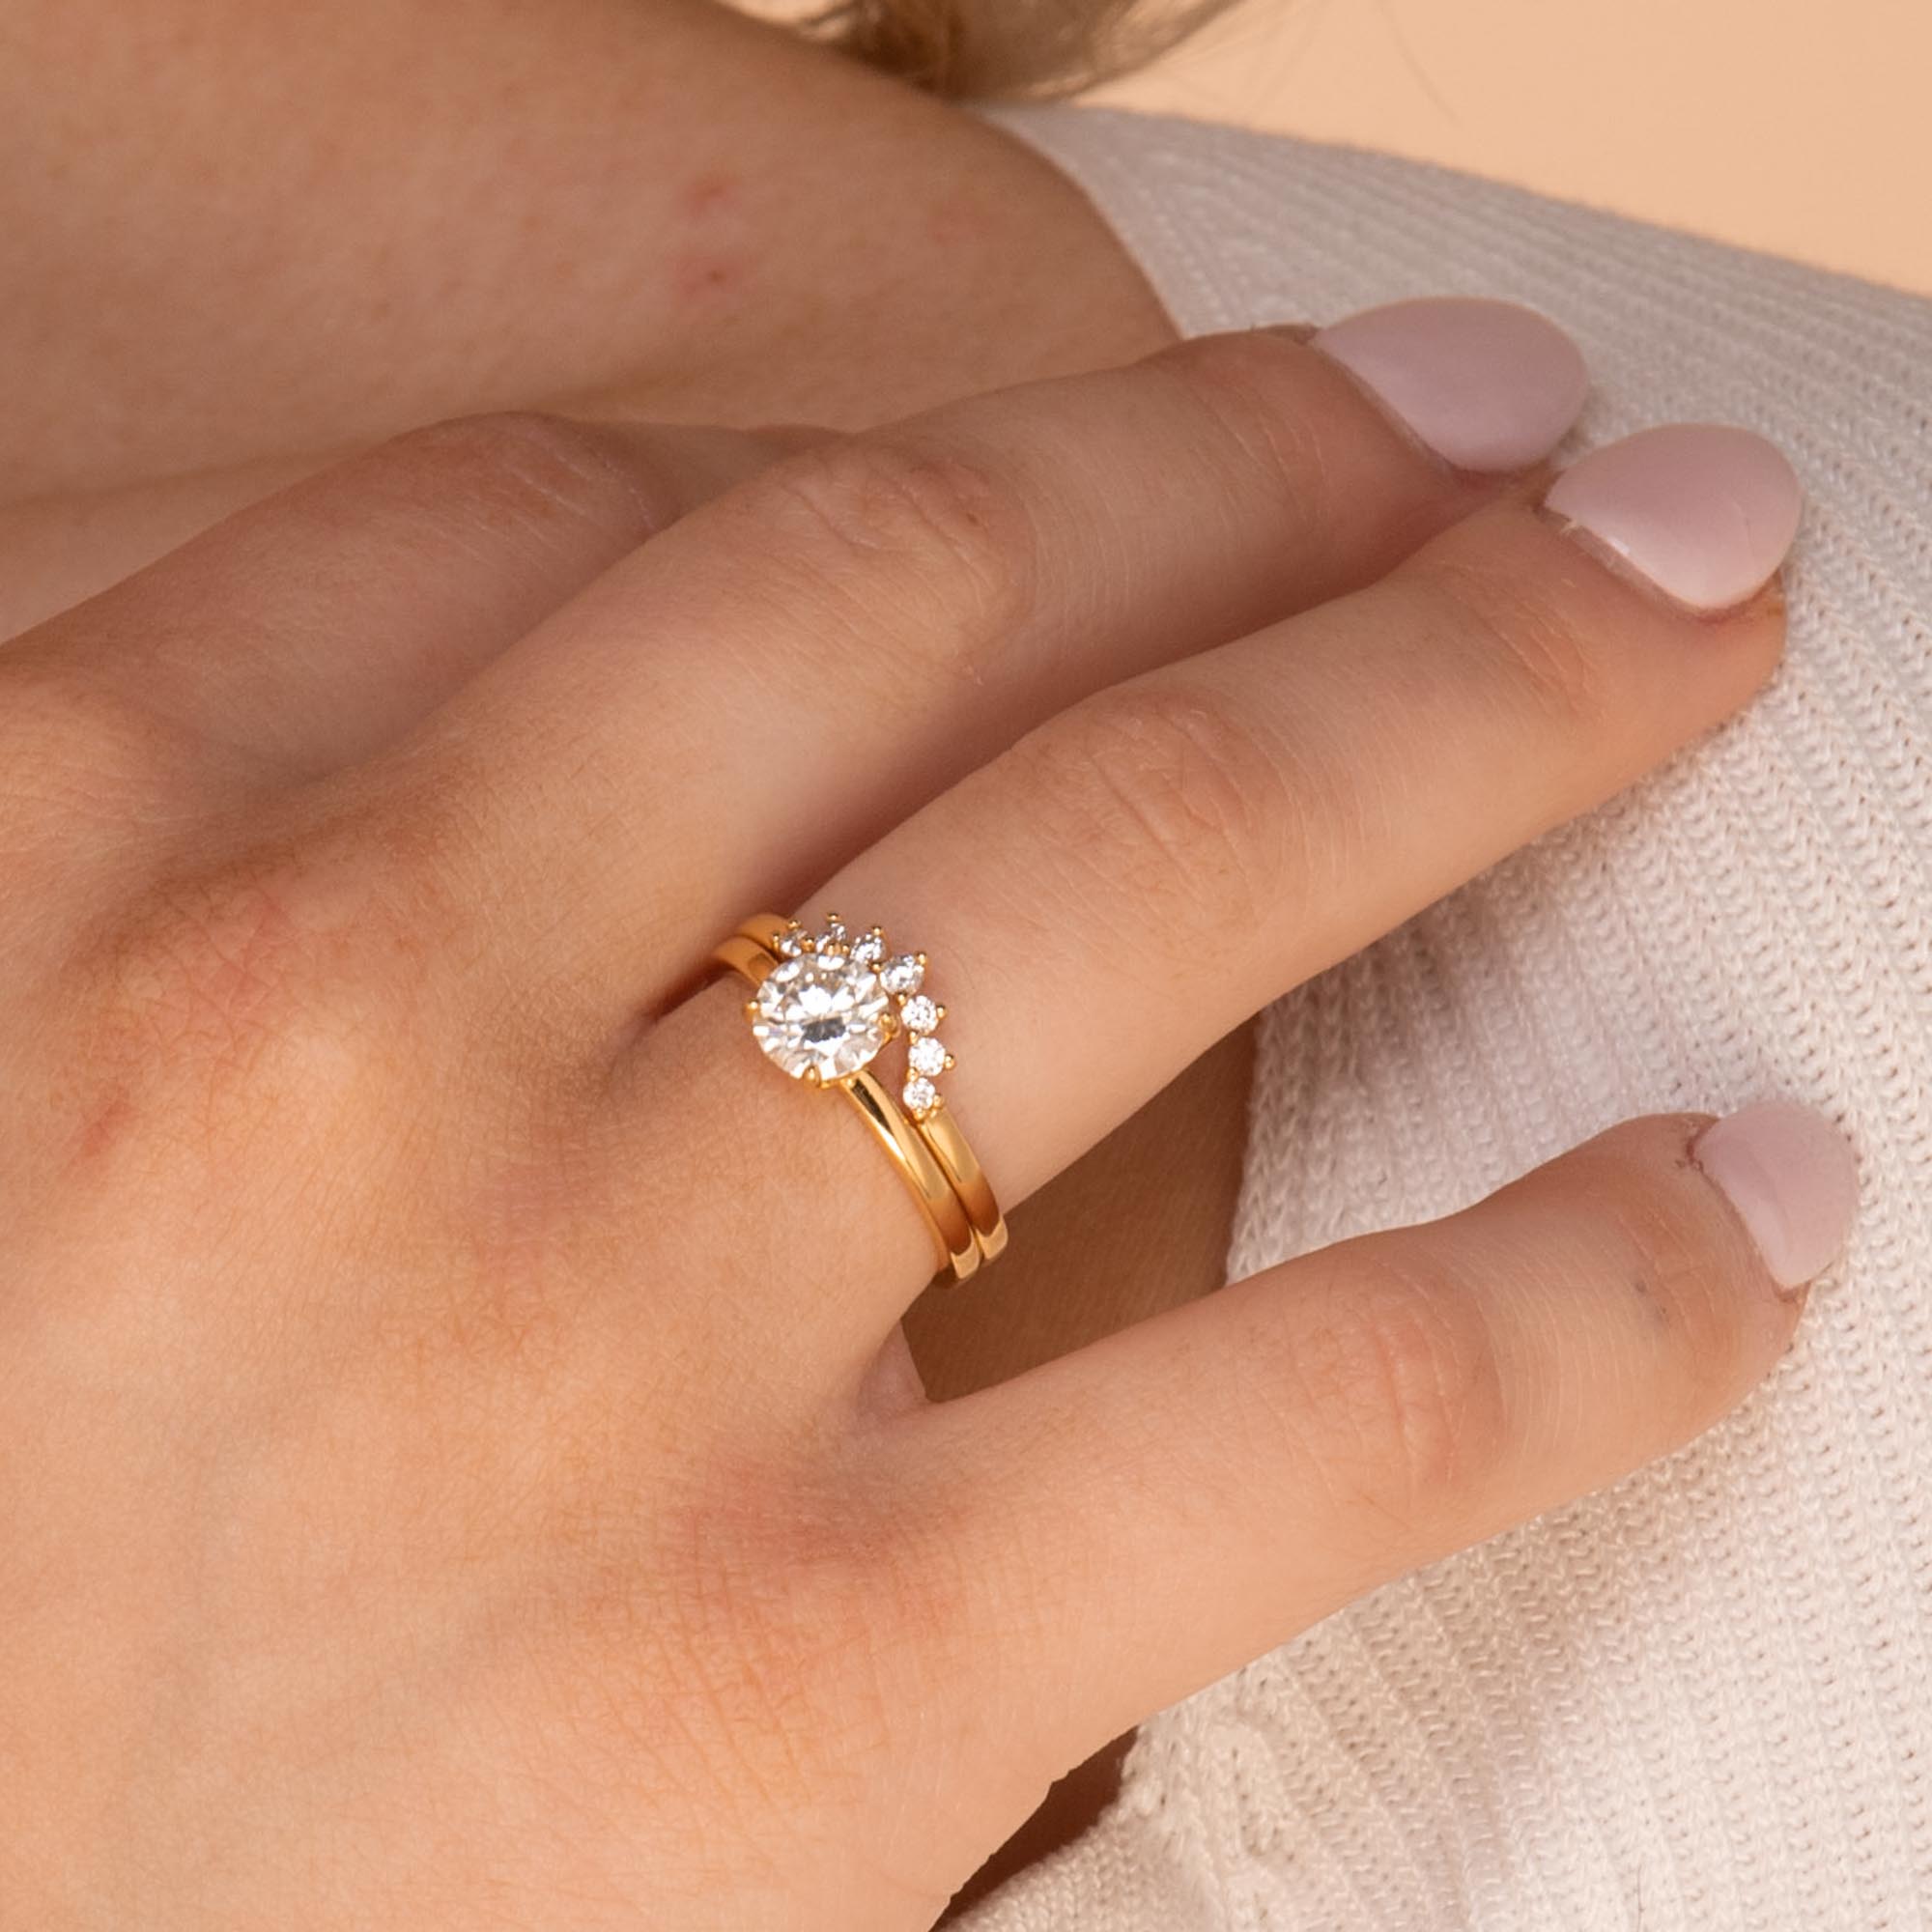 1 ct The Peyton Moissanite Diamond Engagement Ring